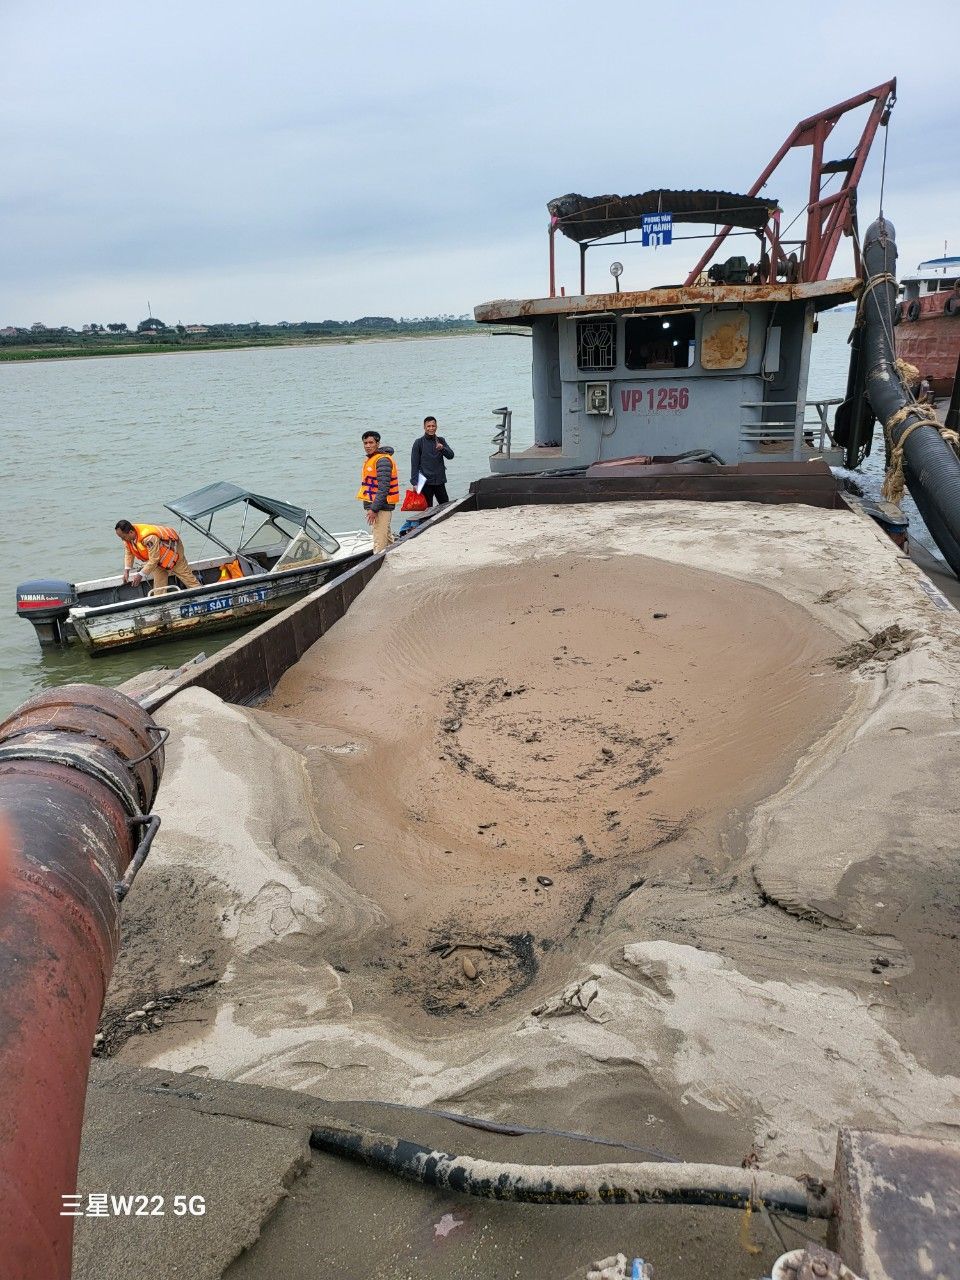 Cục CSGT bắt quả tang tàu bơm hút cát trái phép, thu giữ hơn 100 khối cát